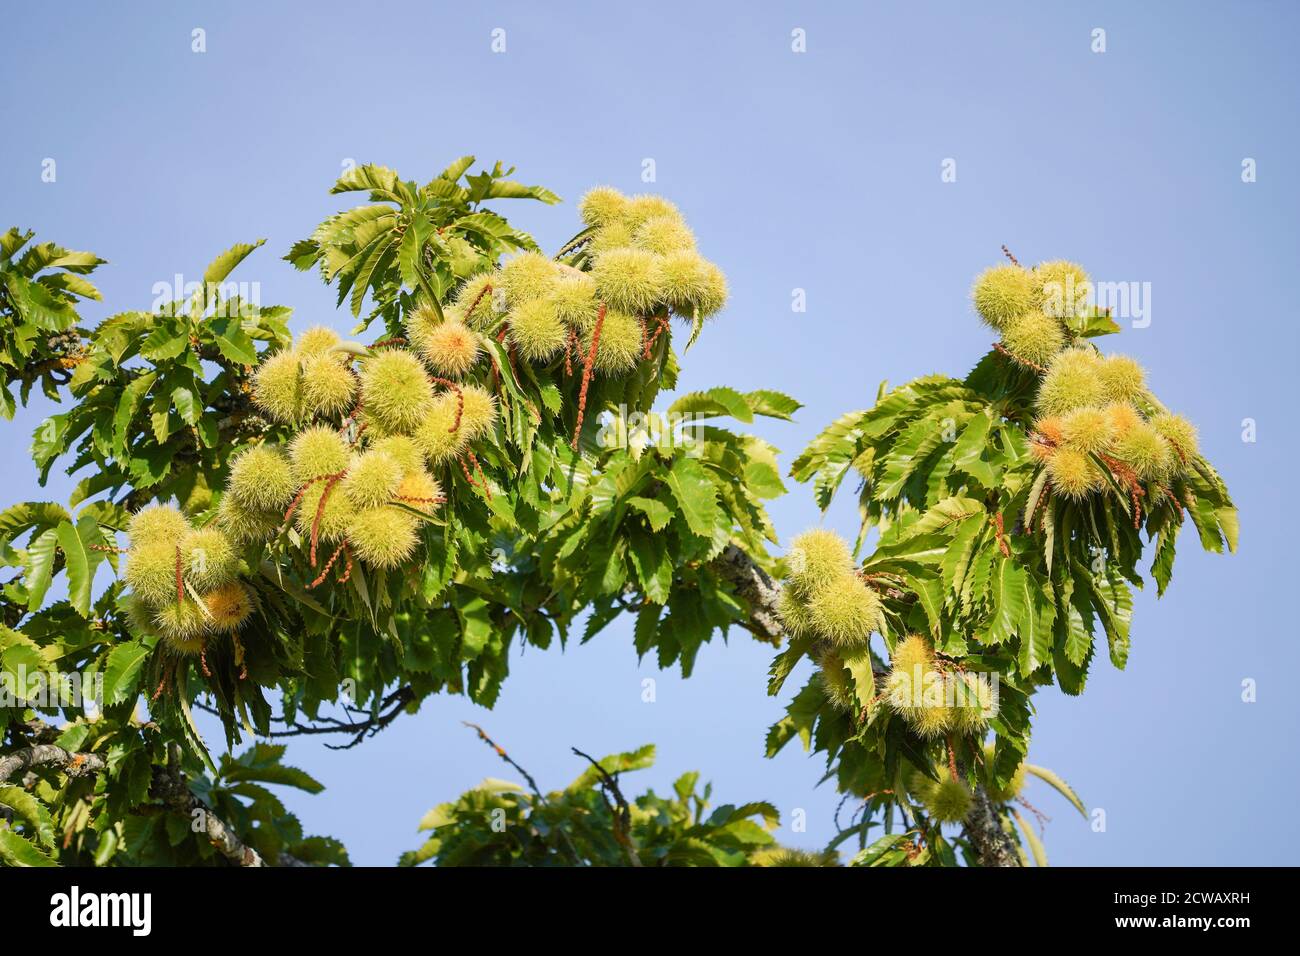 Jeune châtaigne espagnole douce (Castanea sativa) sur arbre, Espagne. Banque D'Images